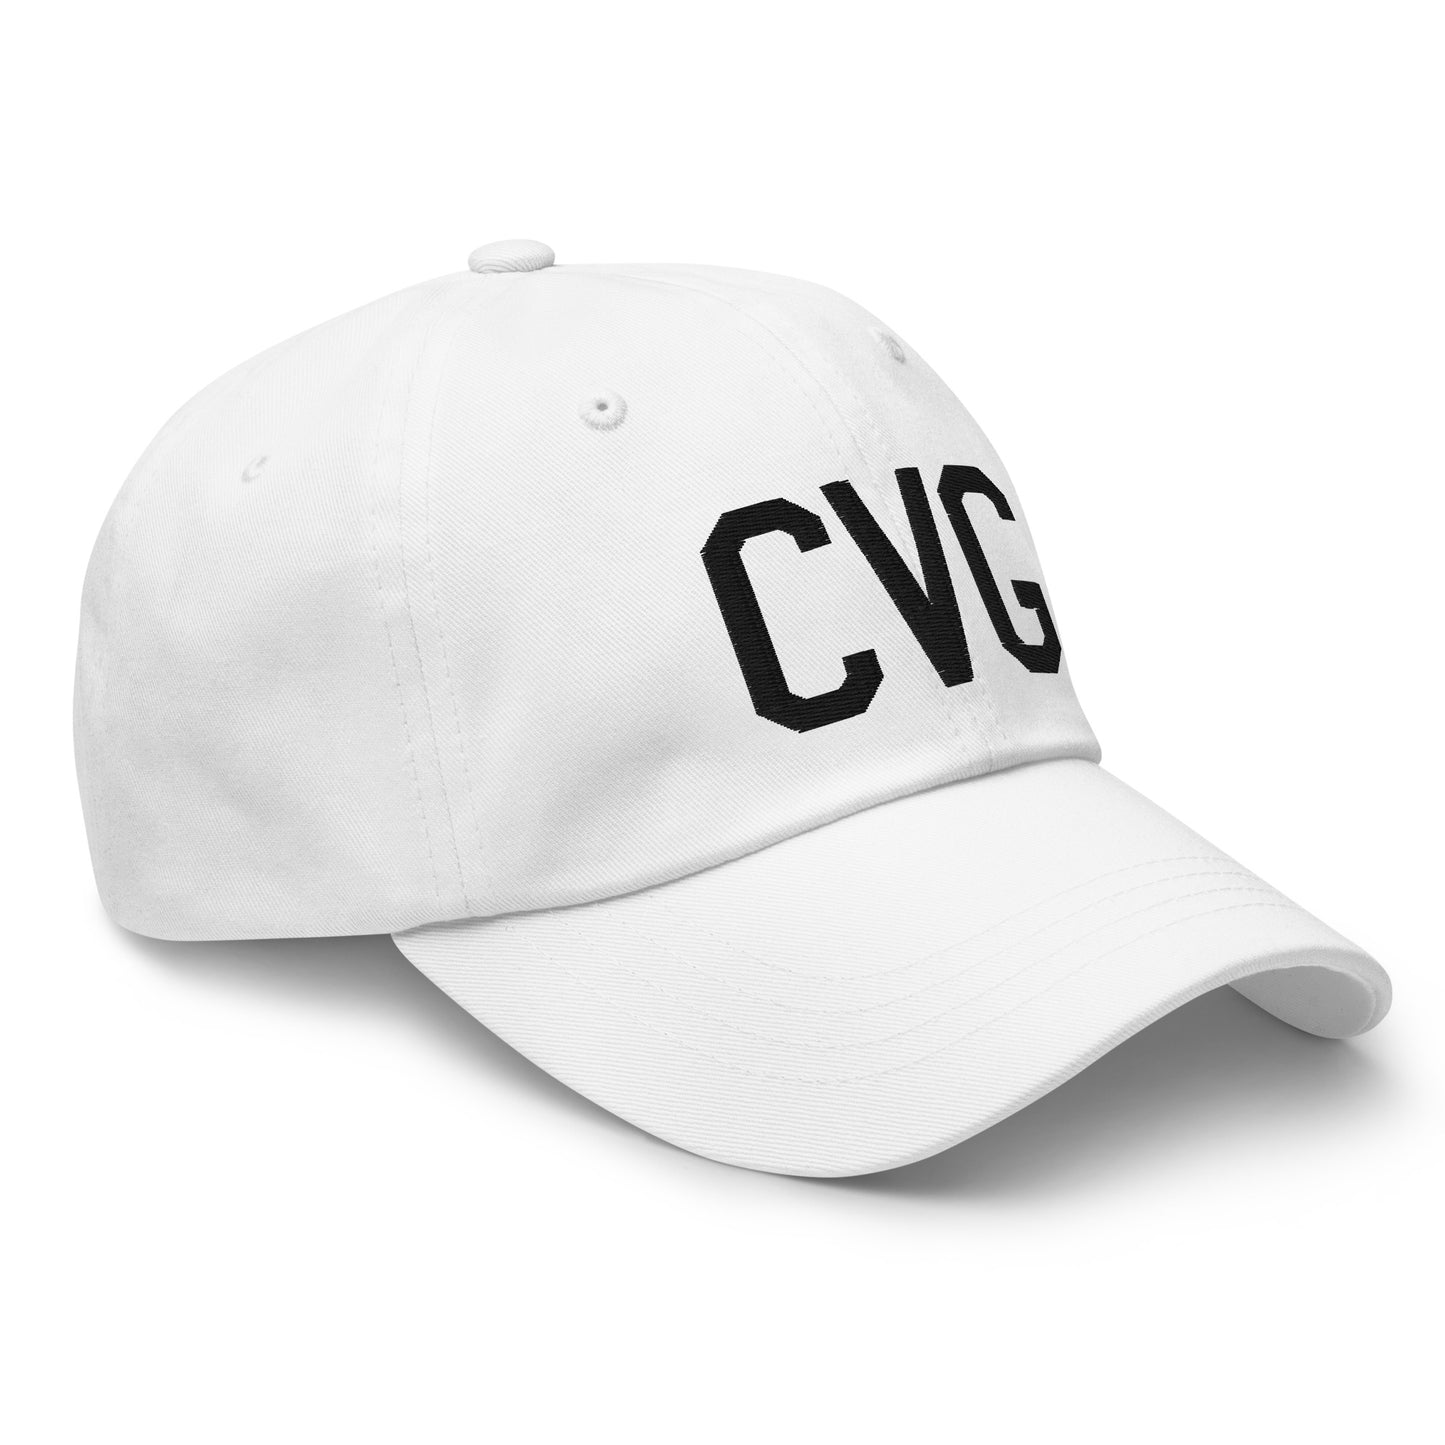 Airport Code Baseball Cap - Black • CVG Cincinnati • YHM Designs - Image 19